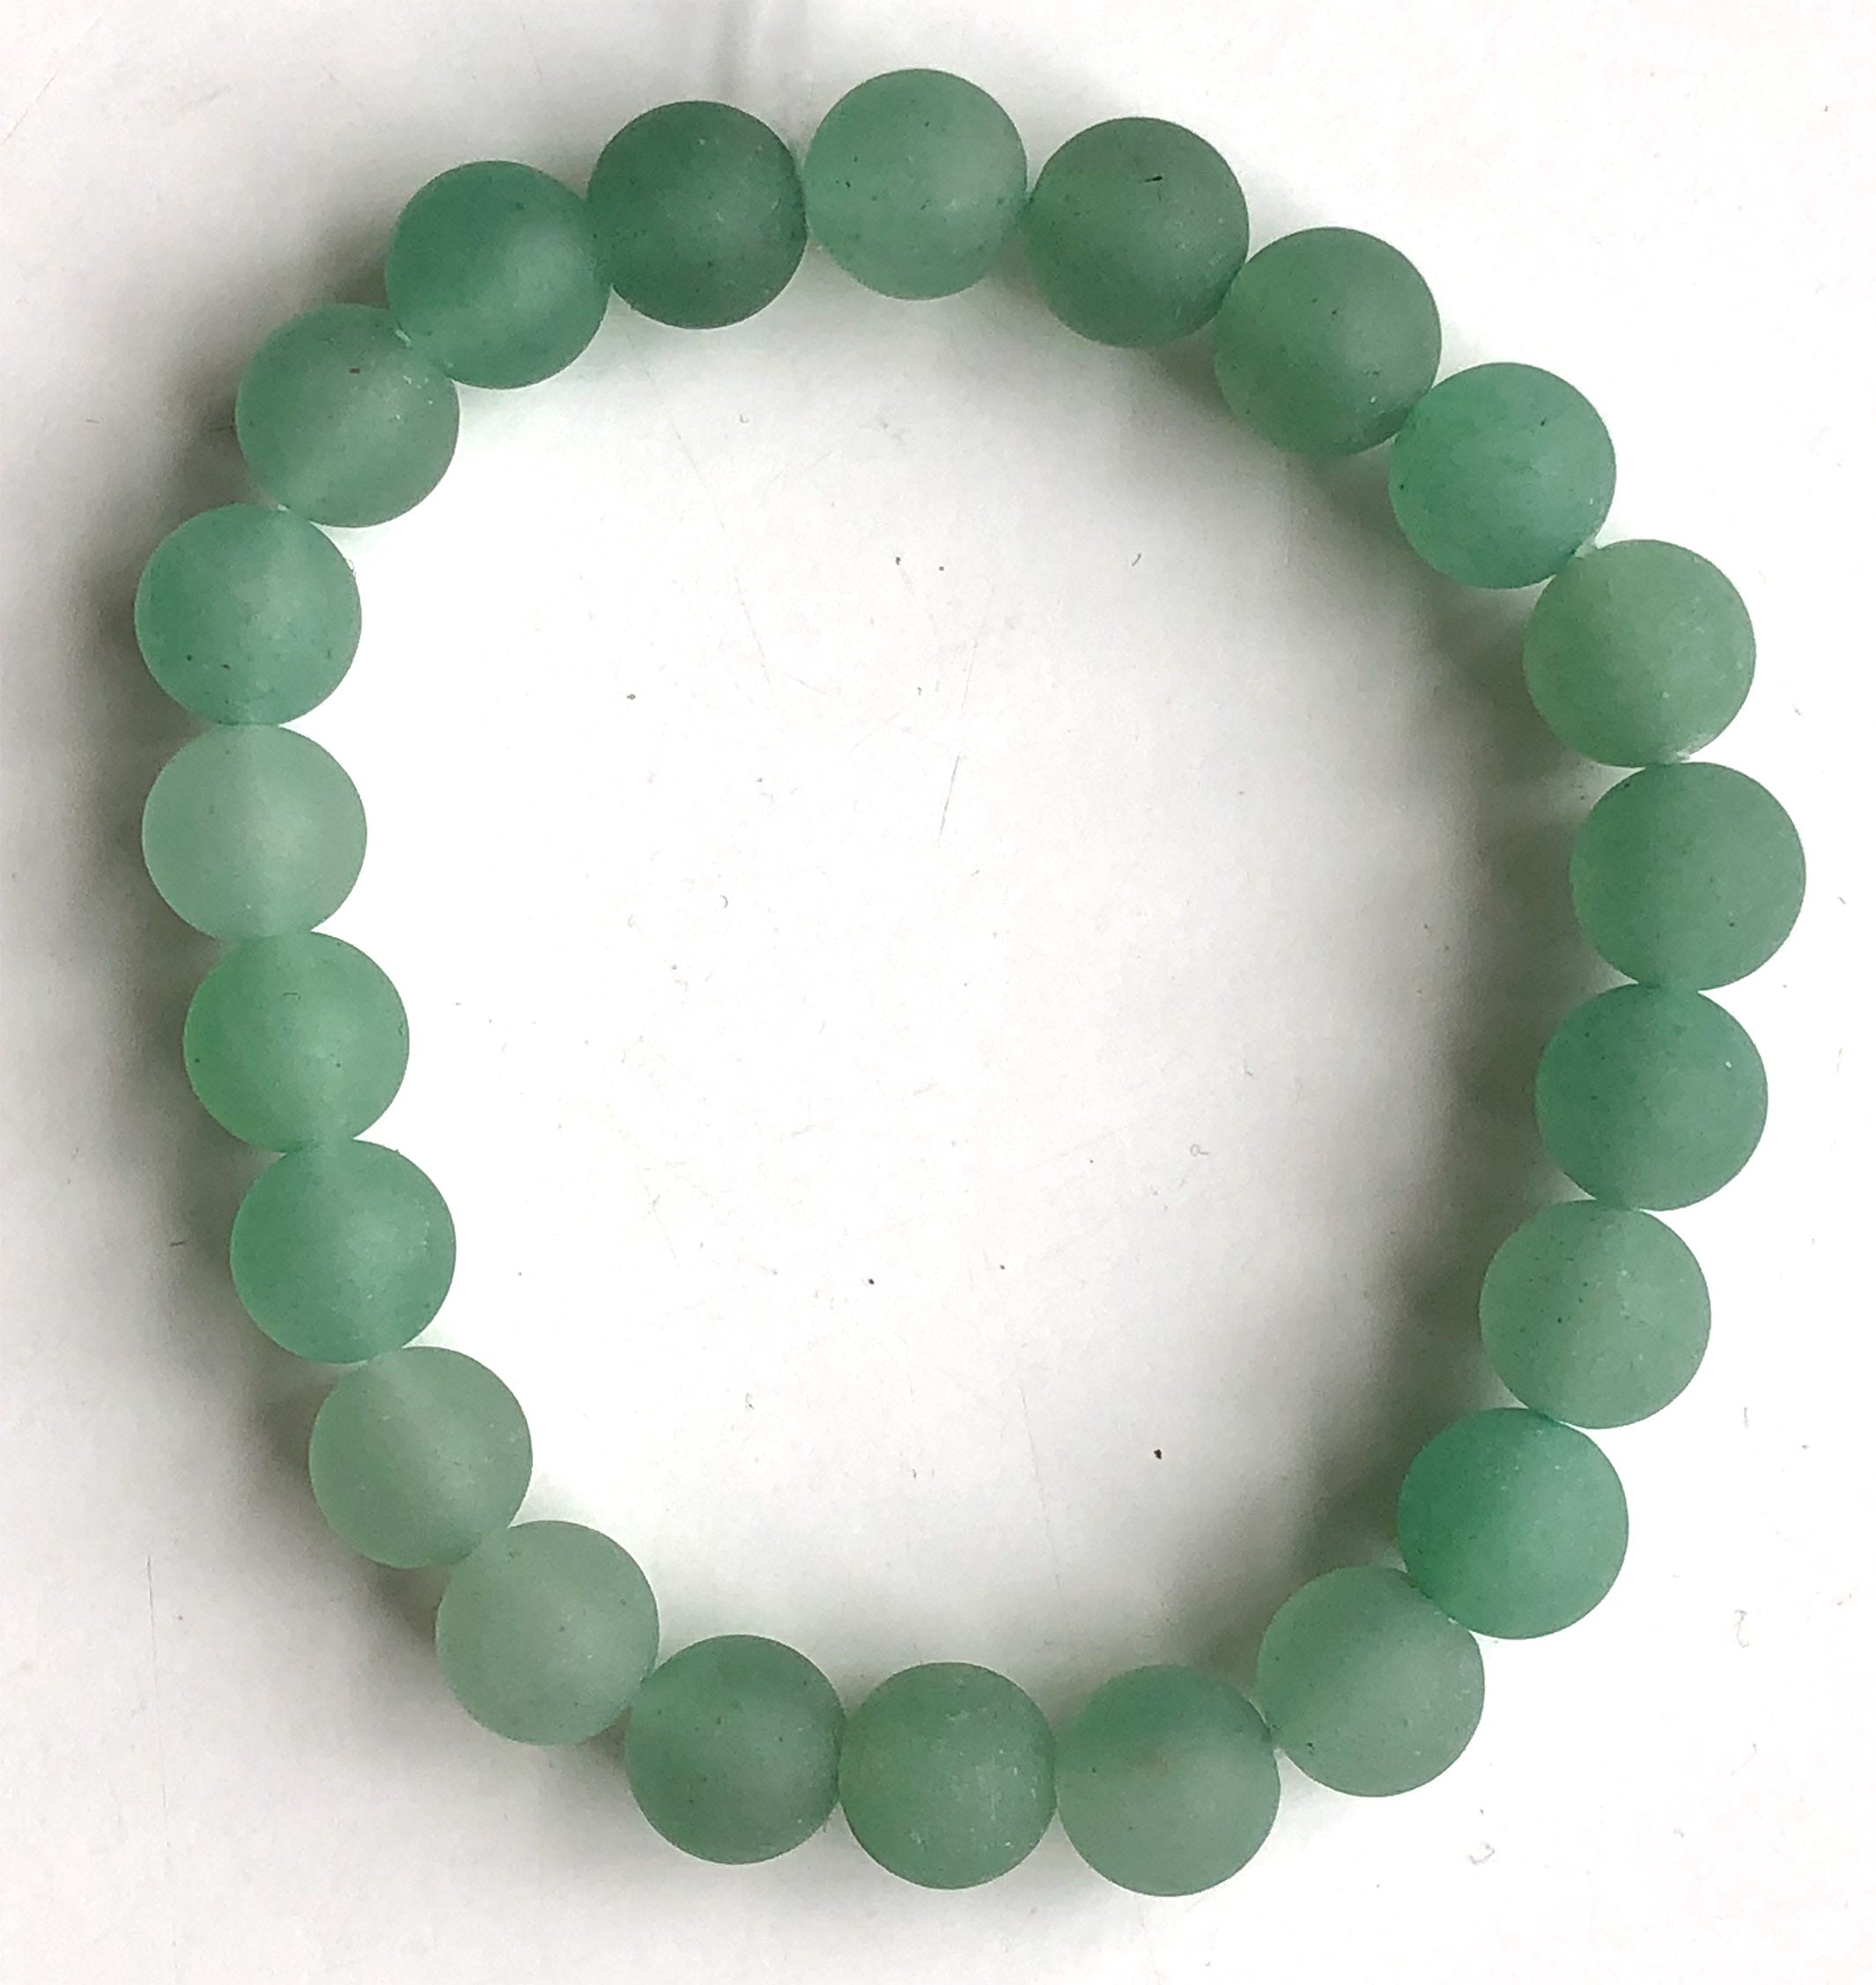 Buy Online Natural Green Aventurine Tube Beads Stone Bracelet